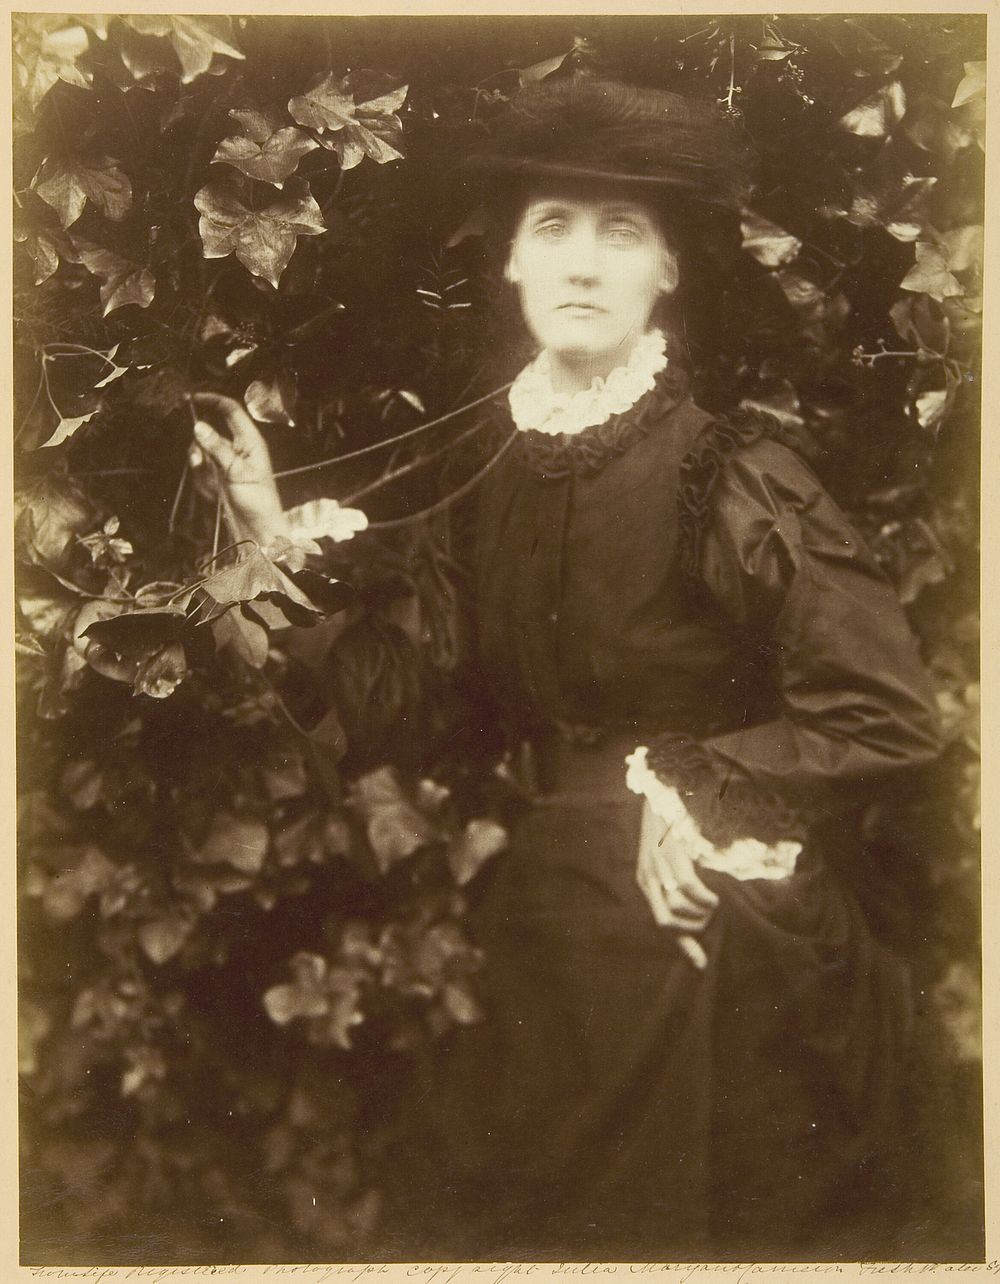 Mrs. Herbert Duckworth ("She Walks in Beauty") by Julia Margaret Cameron